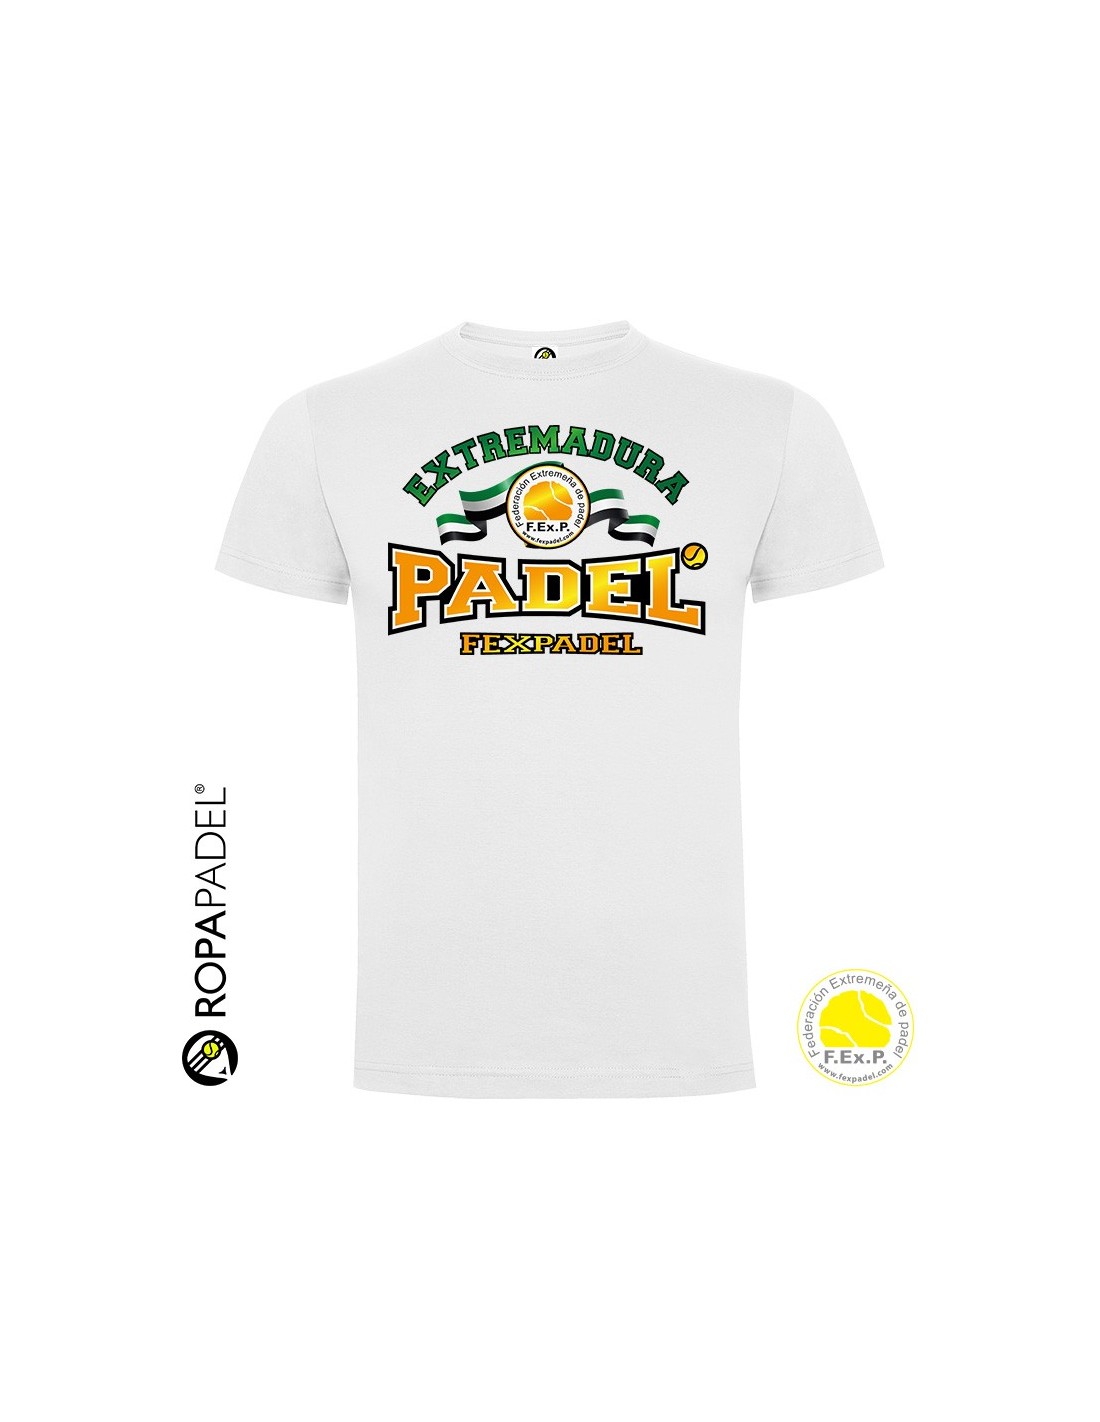 Camiseta de Pádel hombre FEXPADEL SELECCION 2019 Federación